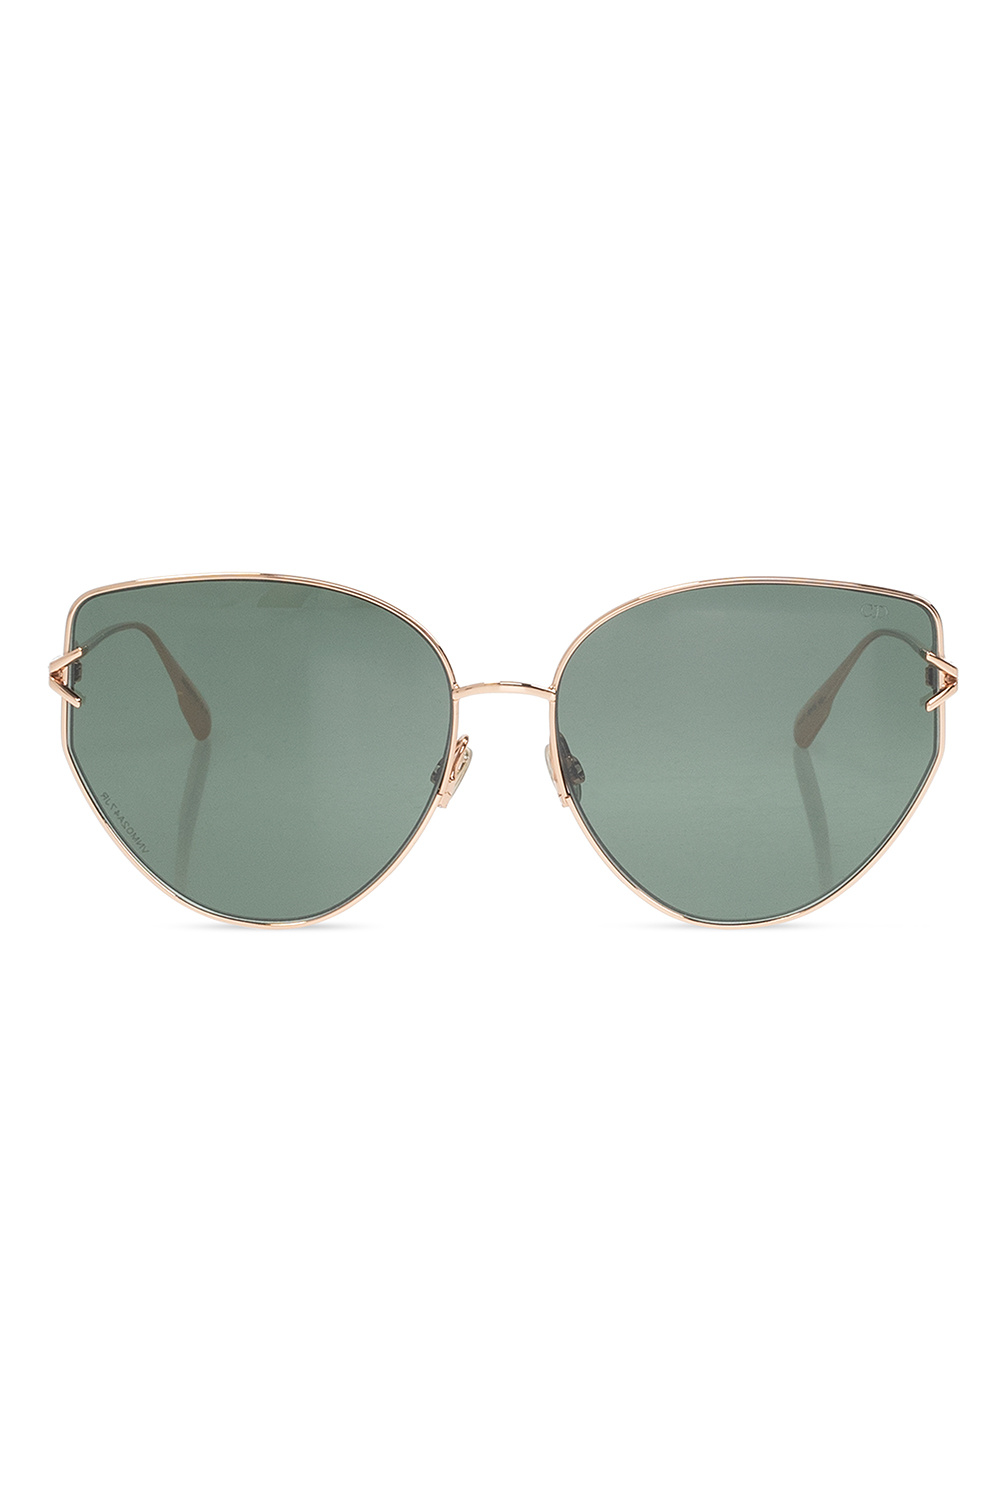 Designer Frames Outlet Dior Sunglasses GIPSY 1